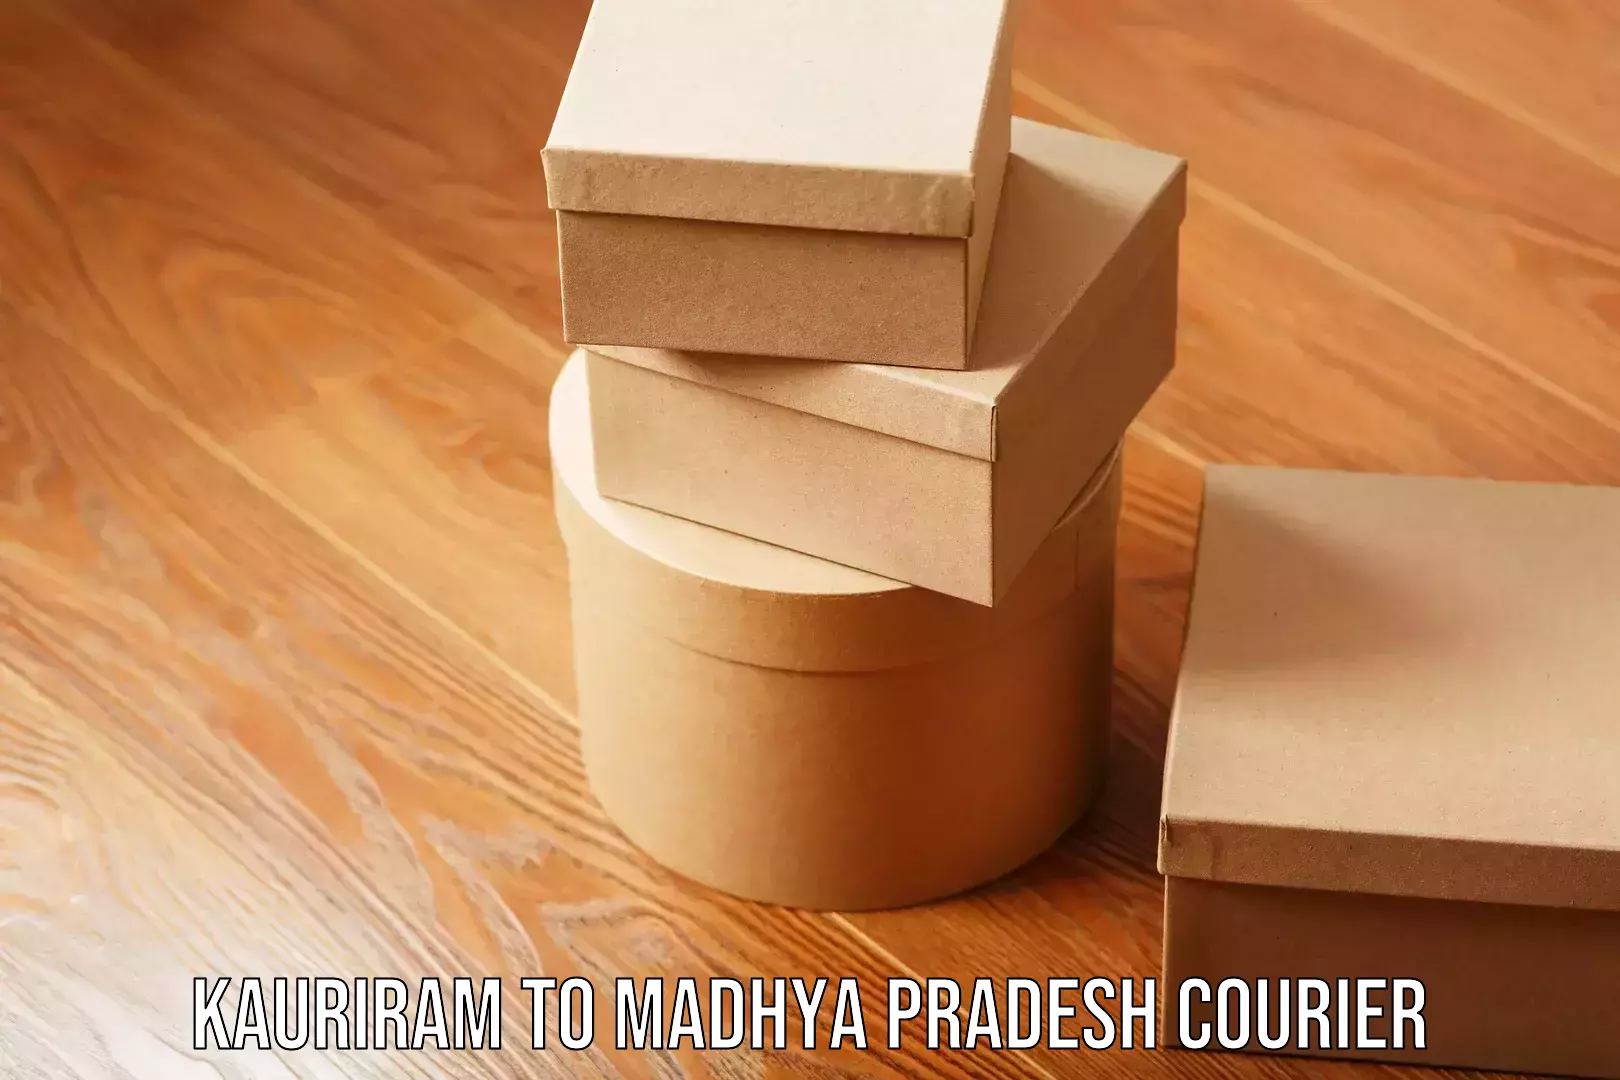 Trusted moving company Kauriram to Madhya Pradesh